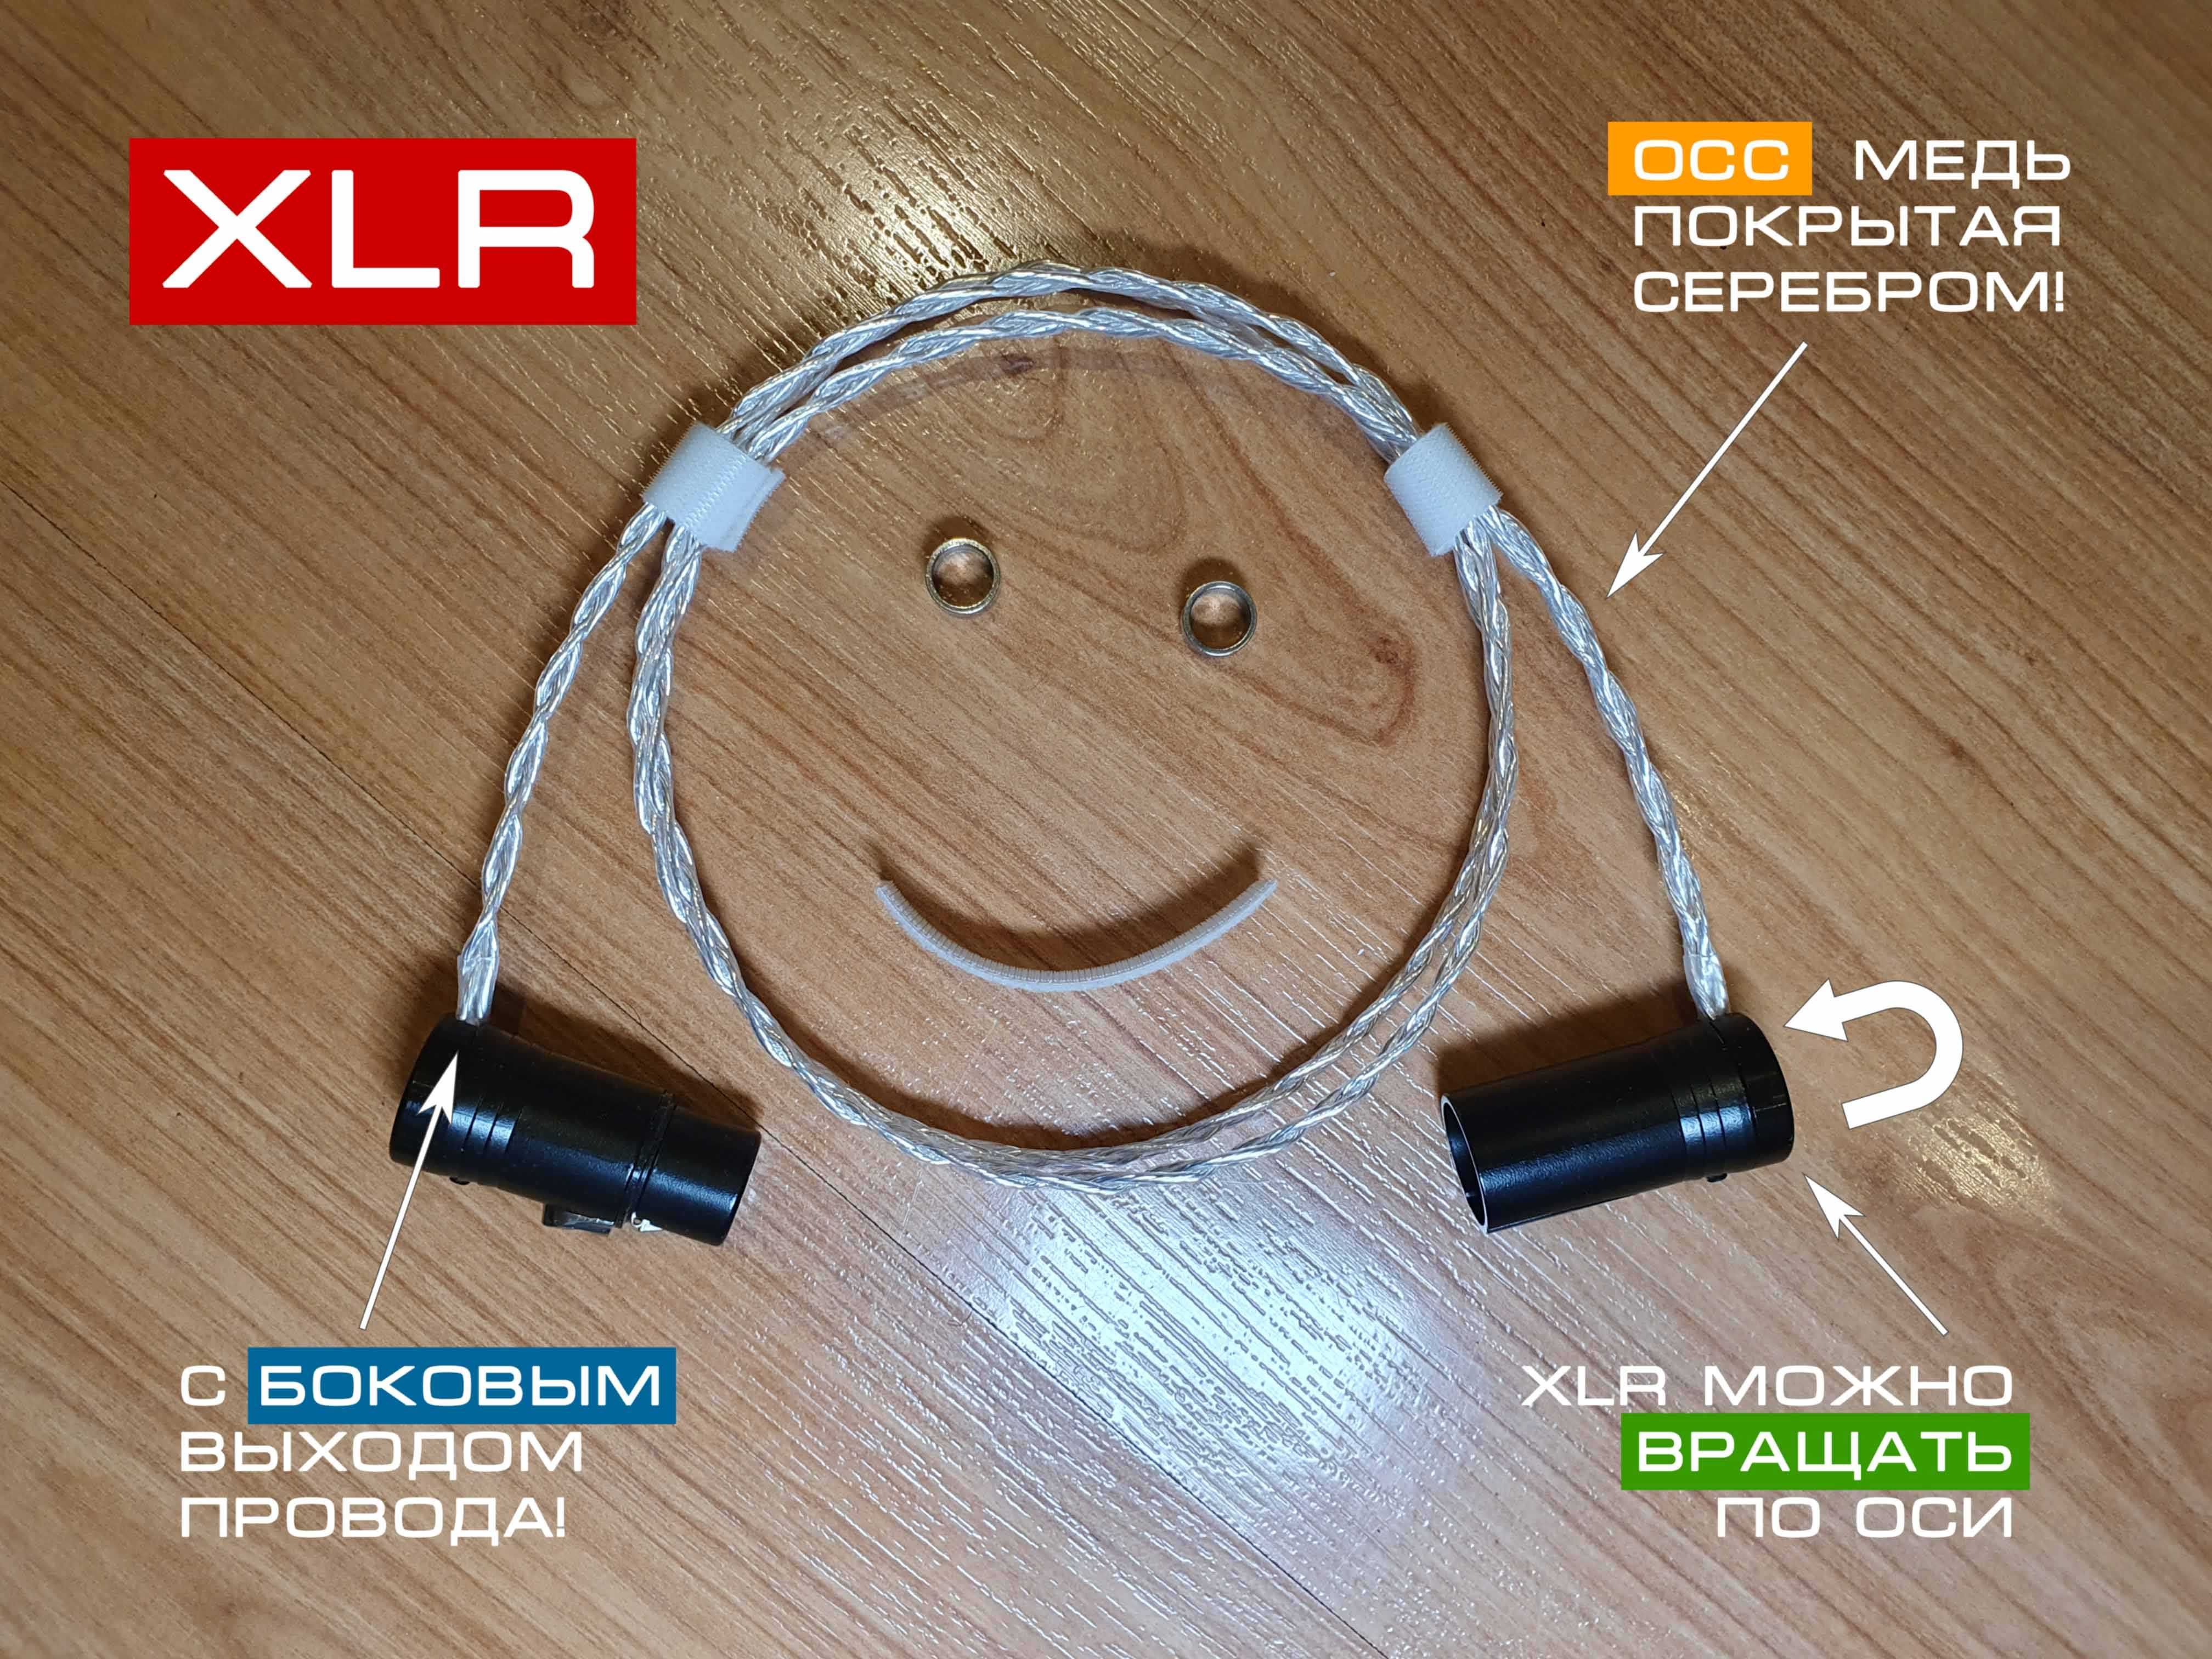 Качественный аудиофильский балансный XLR кабель high end/hi-fi уровня